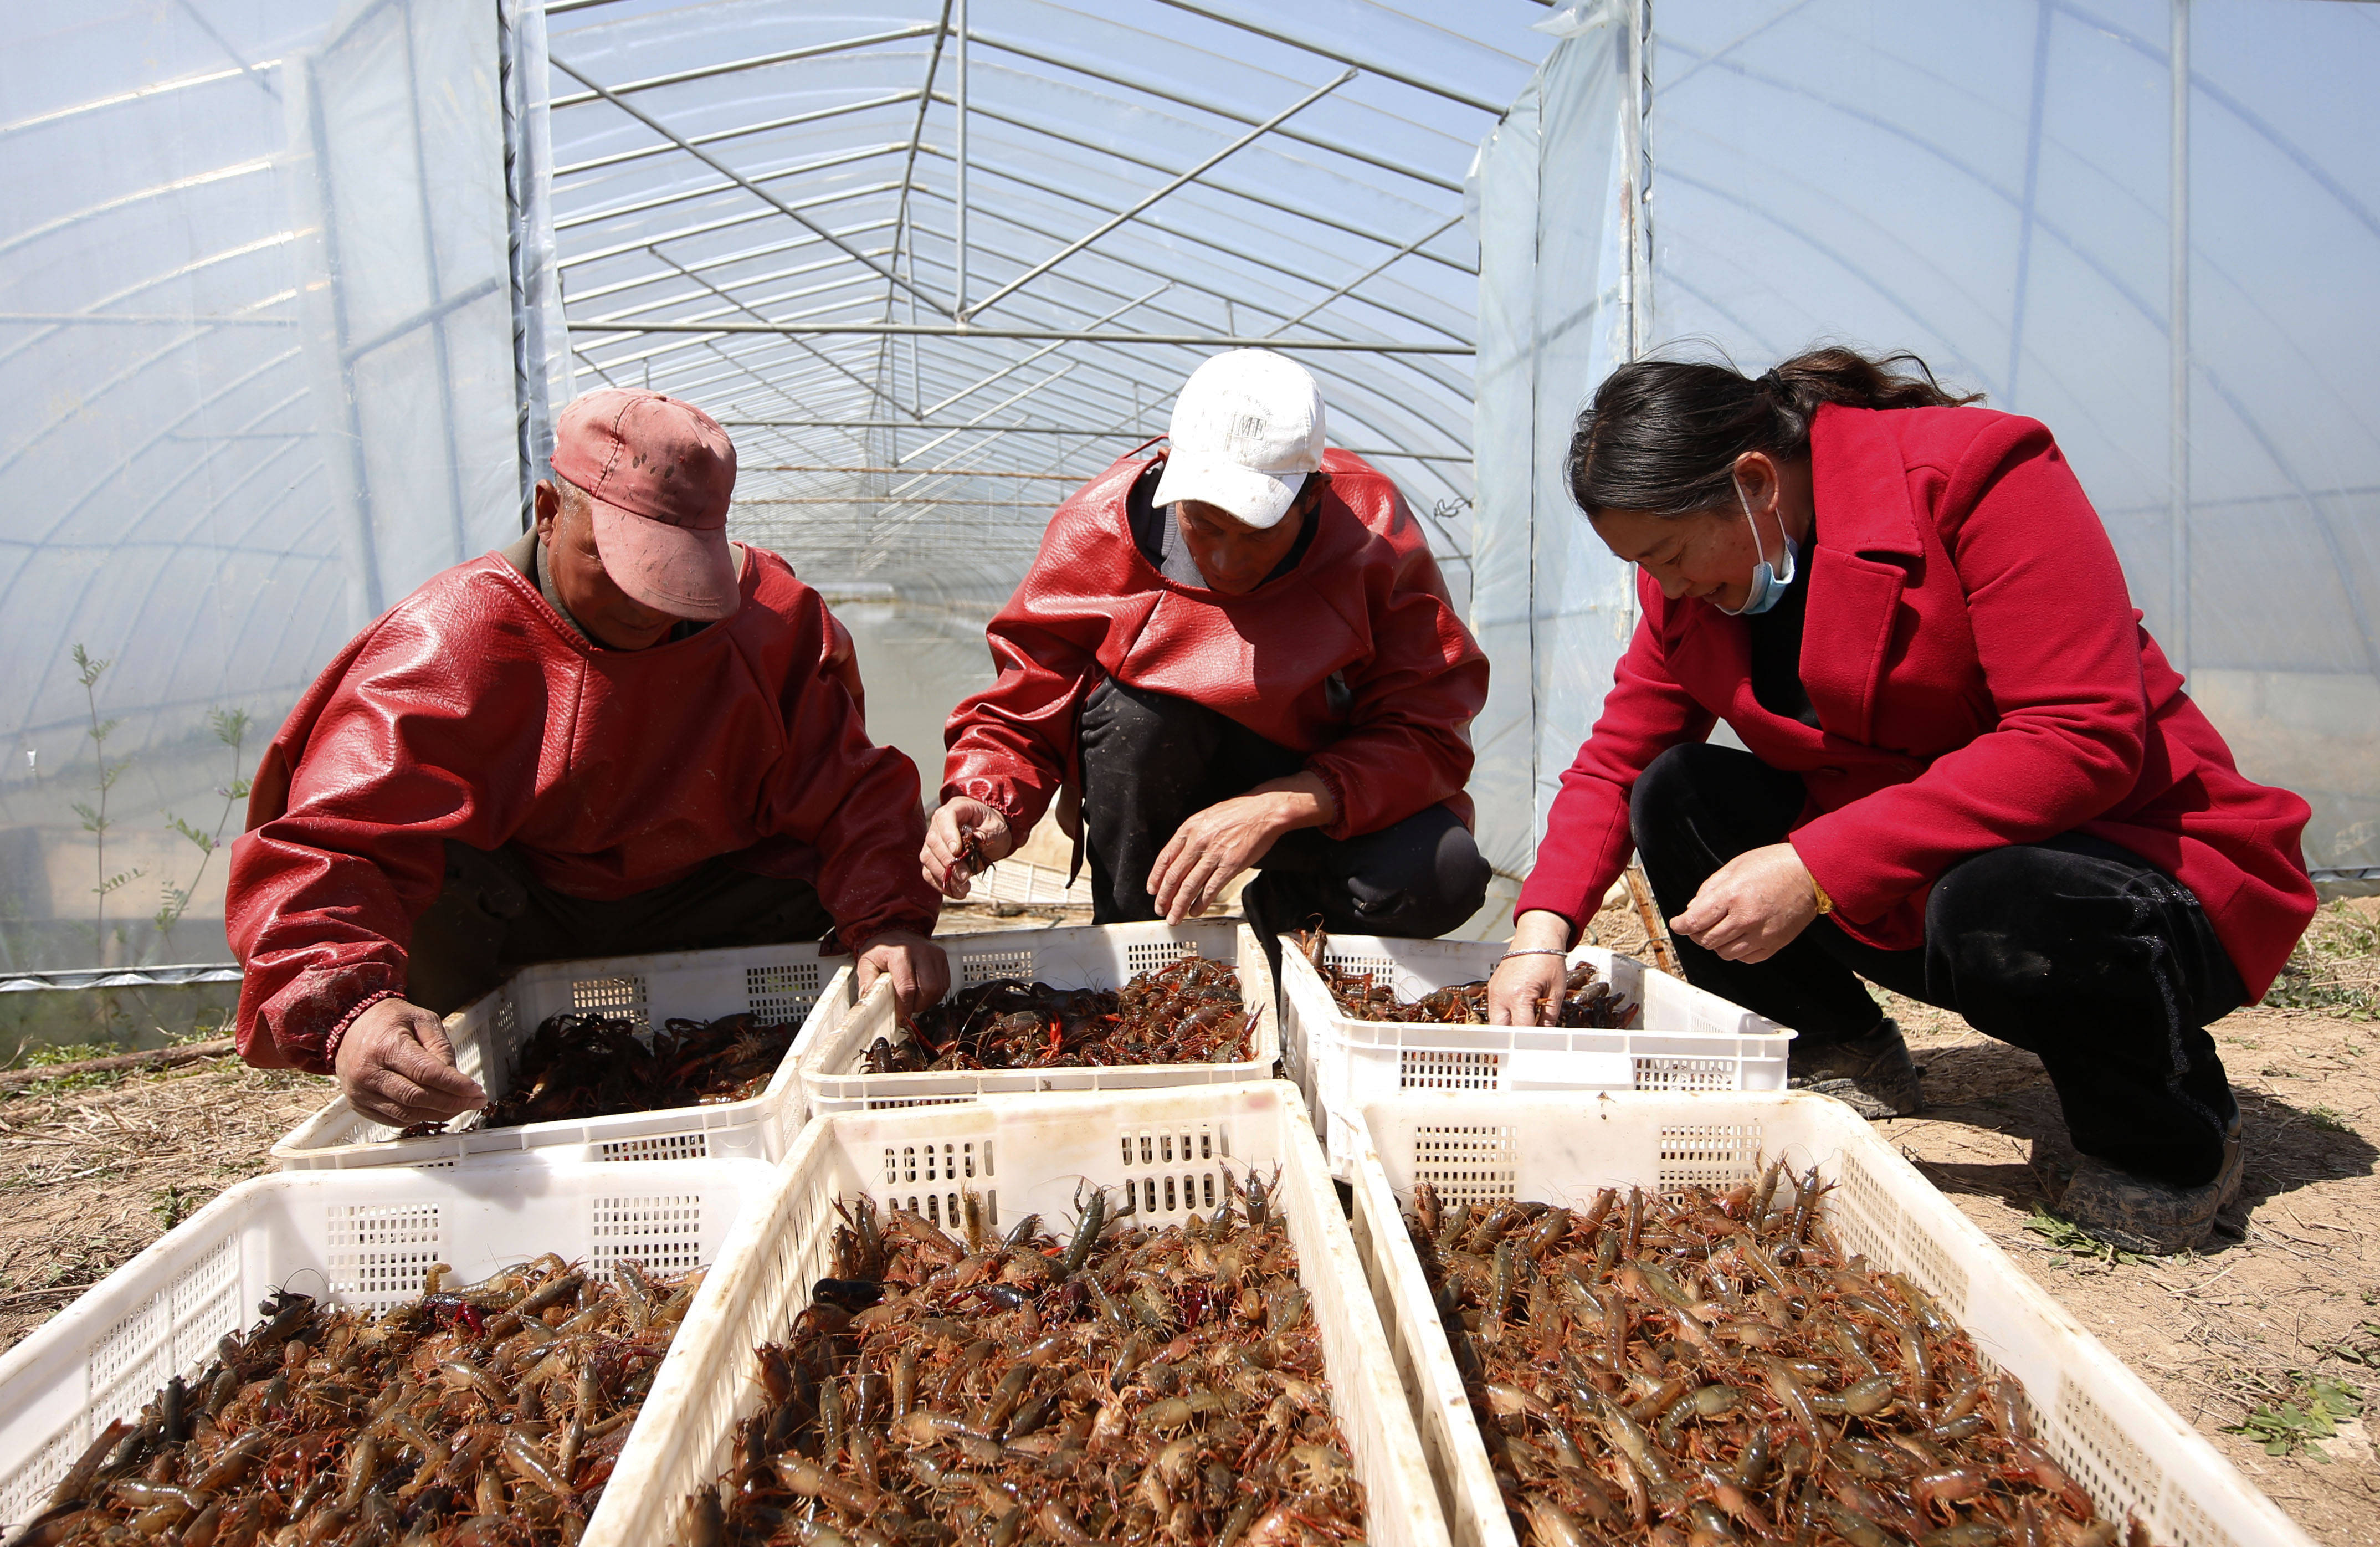 3月23日,泗洪县龙集镇虾农在大棚外分拣捕捞出水的小龙虾.